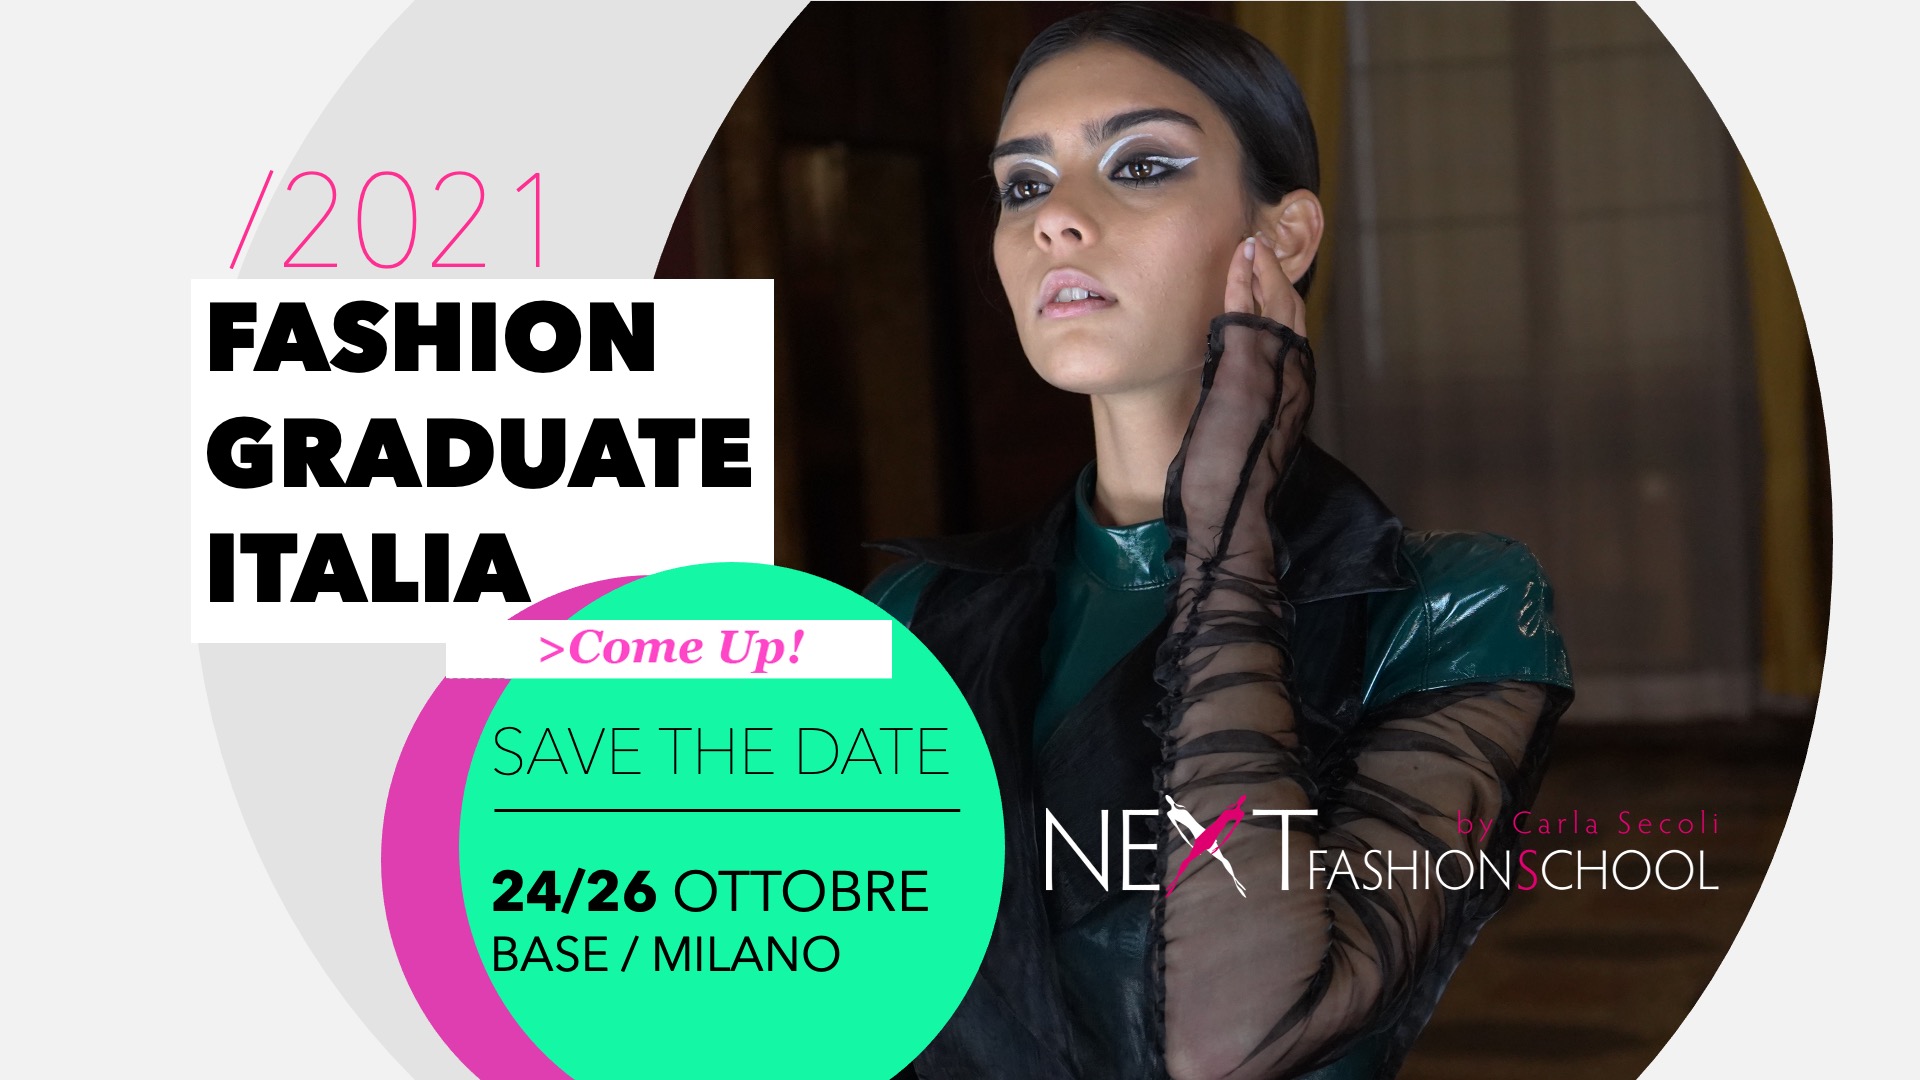 Next a Fashion Graduate Italia 2021